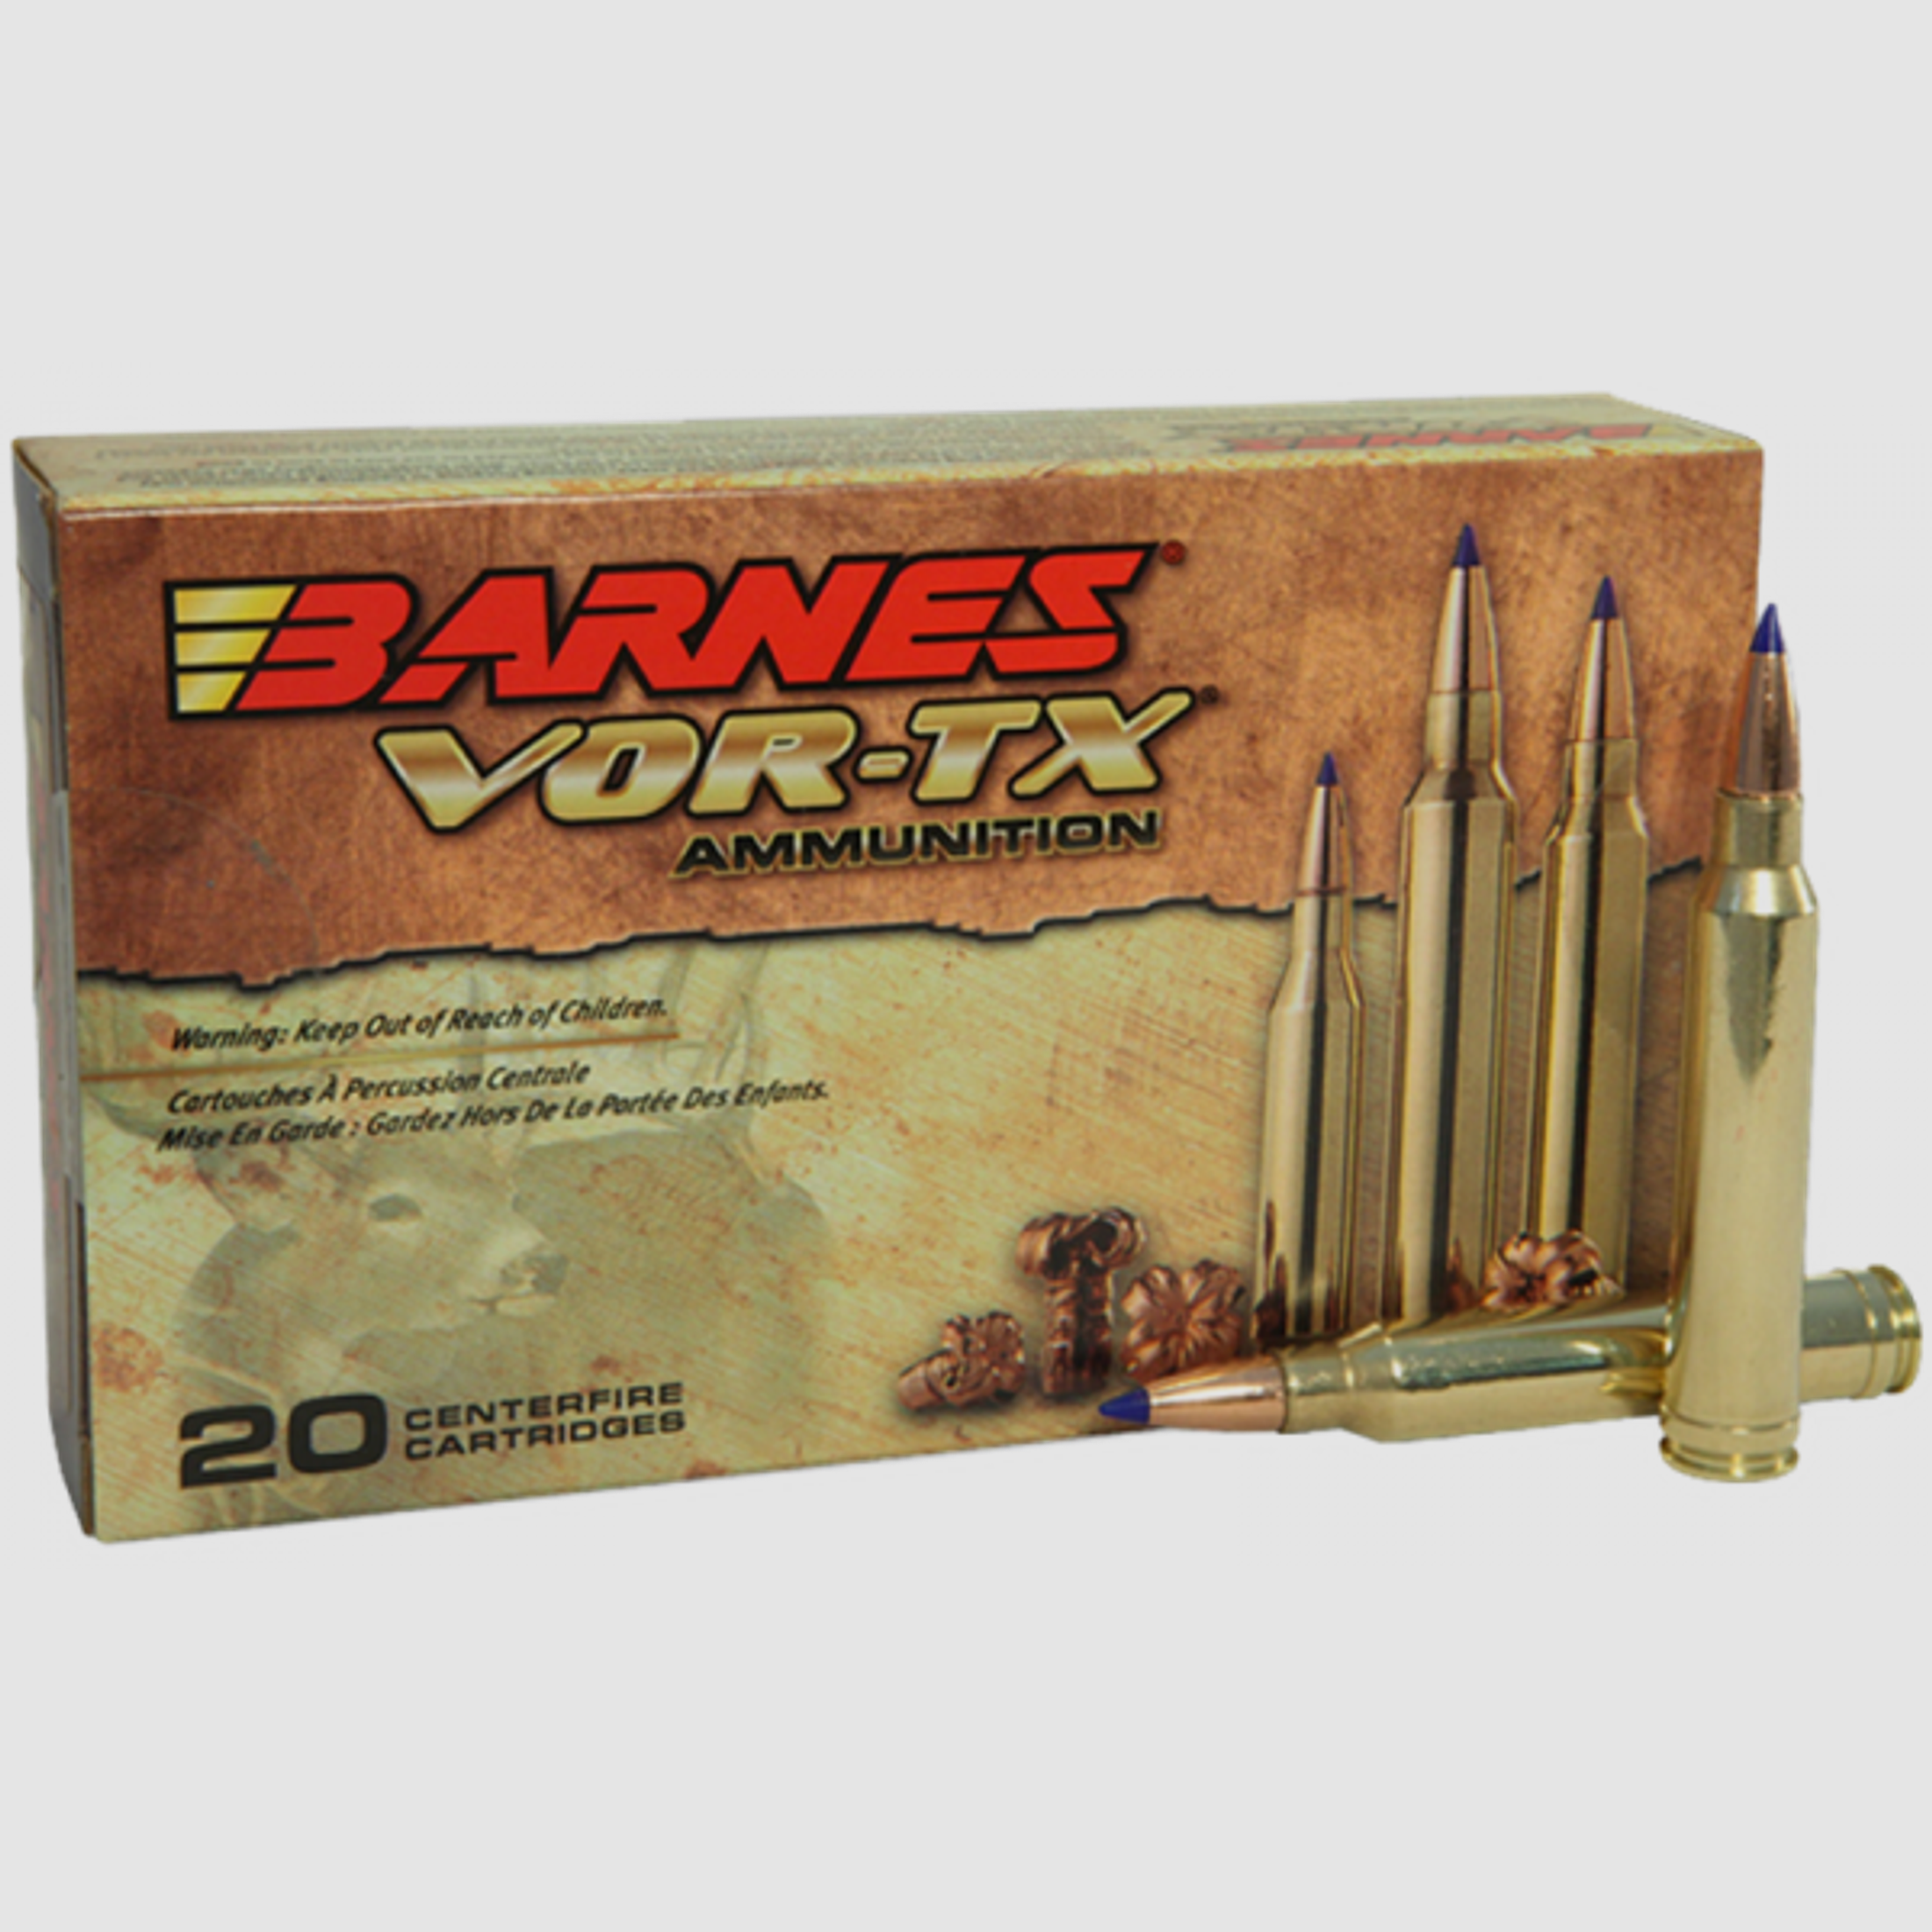 Barnes VOR-TX 6,5mm Creedmoor TTSX 120 grs Büchsenpatronen